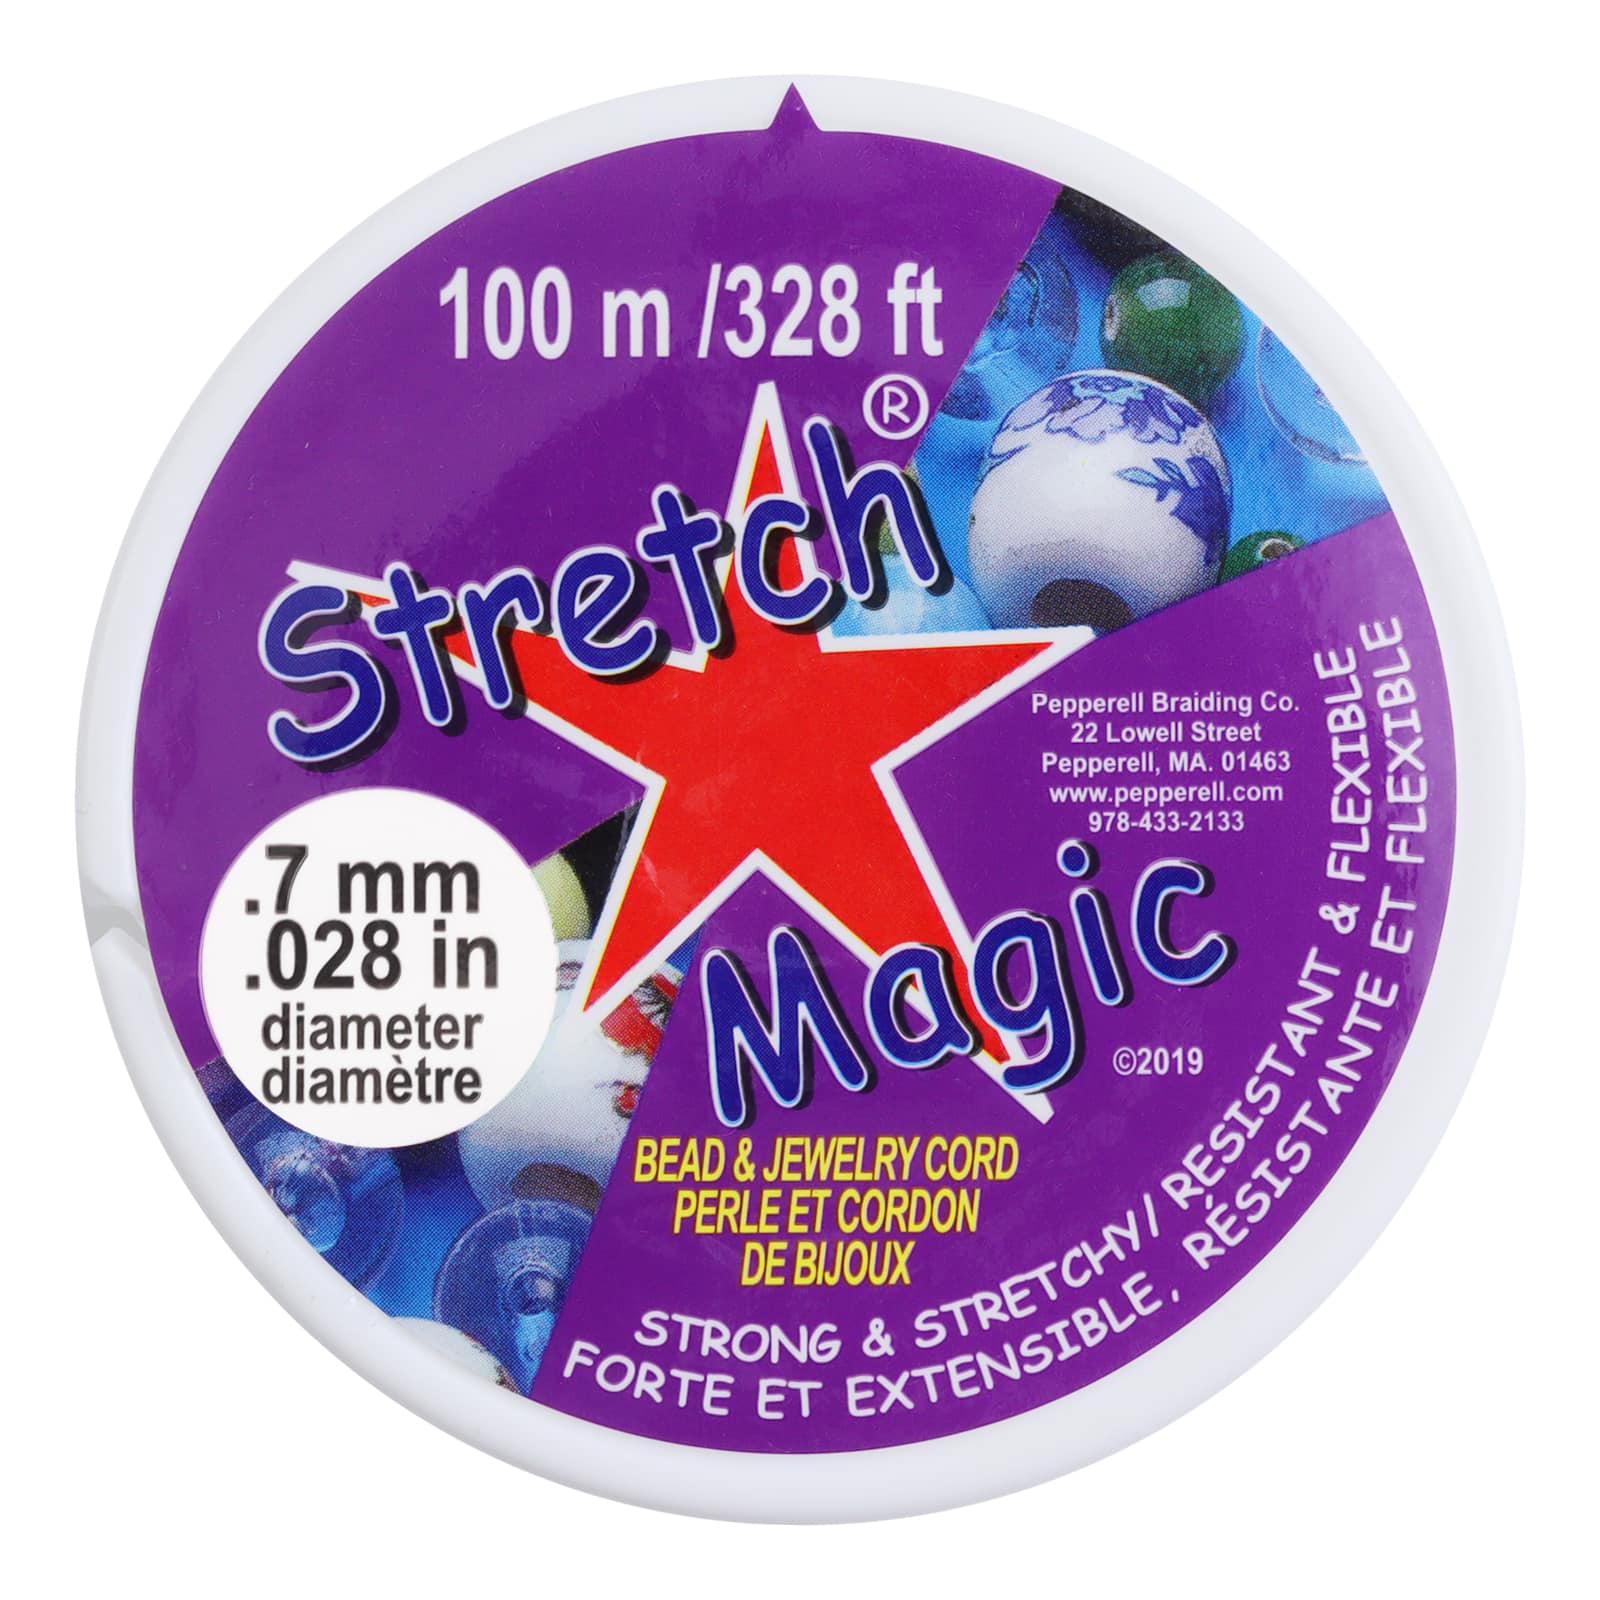 7mm Clear Stretch Magic - 100m – Beads, Inc.